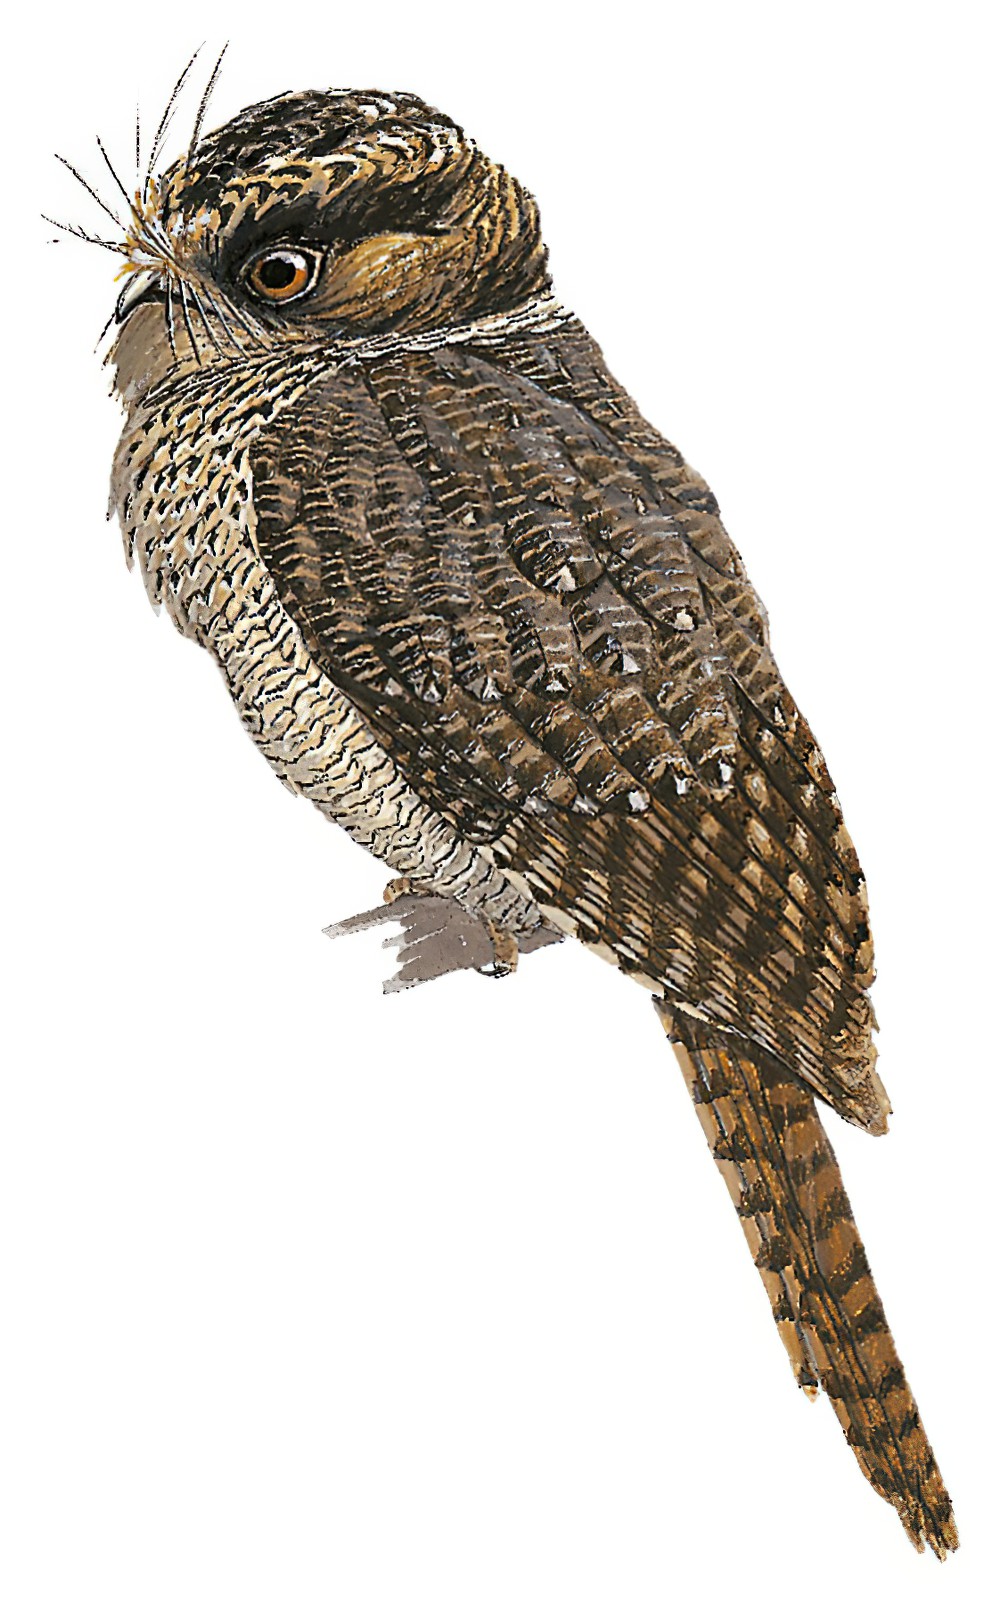 Mountain Owlet-nightjar / Aegotheles albertisi